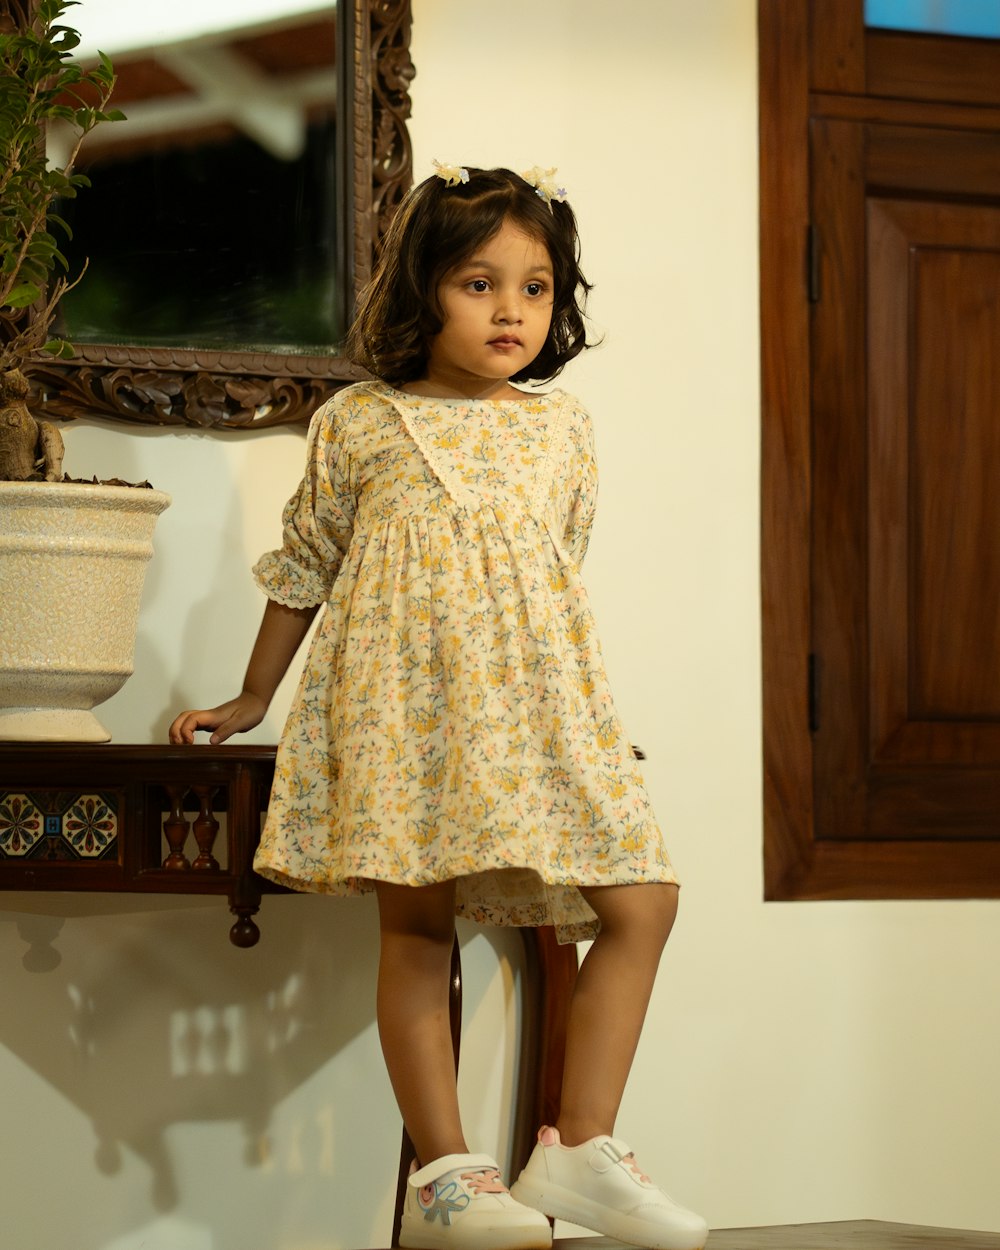 ein kleines Mädchen, das auf einem Stuhl vor einem Spiegel steht